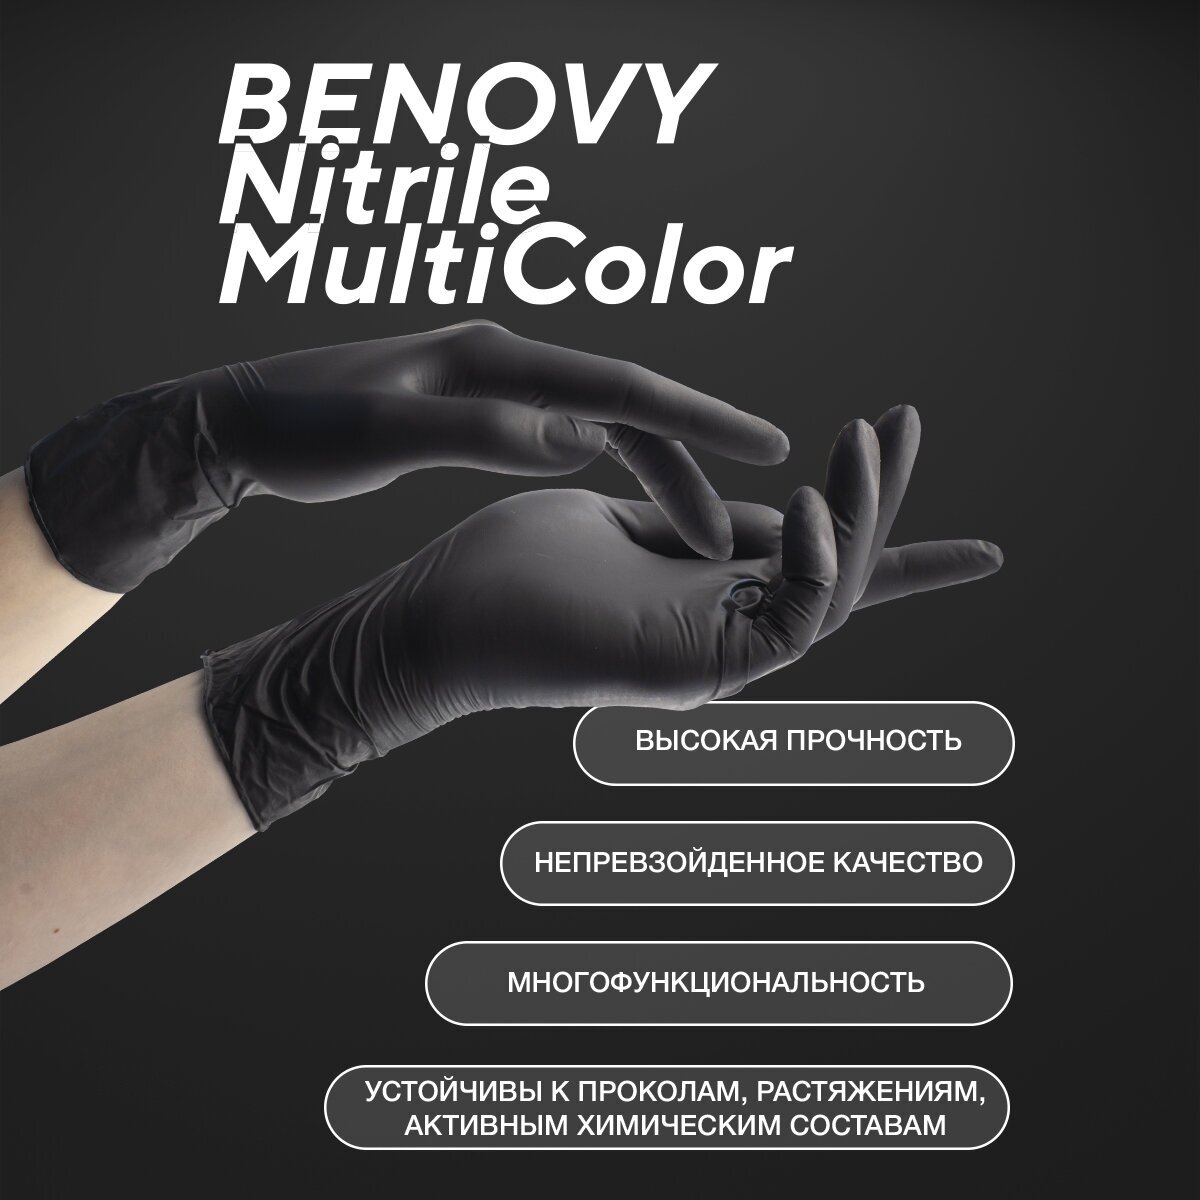 Перчатки смотровые Benovy Nitrile MultiColor текстурированные на пальцах, 50 пар, размер: S, цвет: черный, 1 уп.